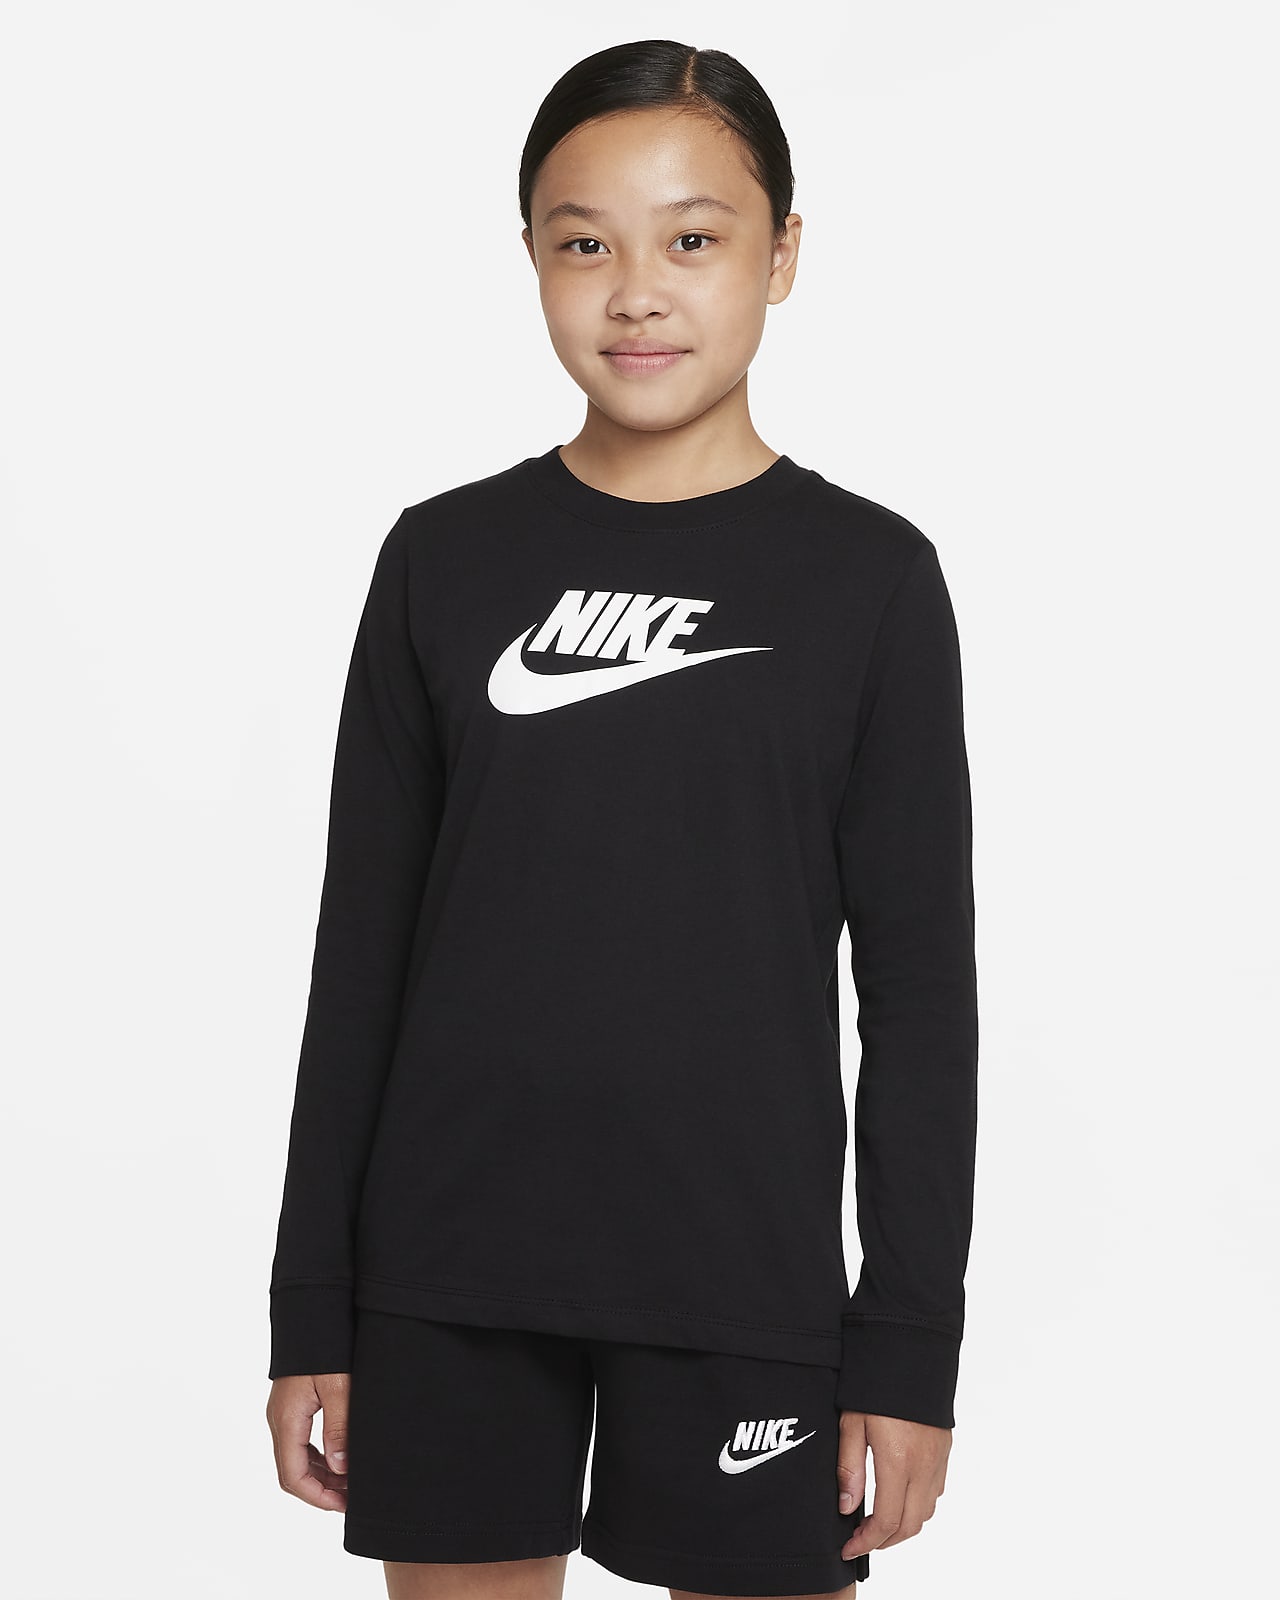 Tee-shirt à manches longues Nike Sportswear pour Fille plus âgée